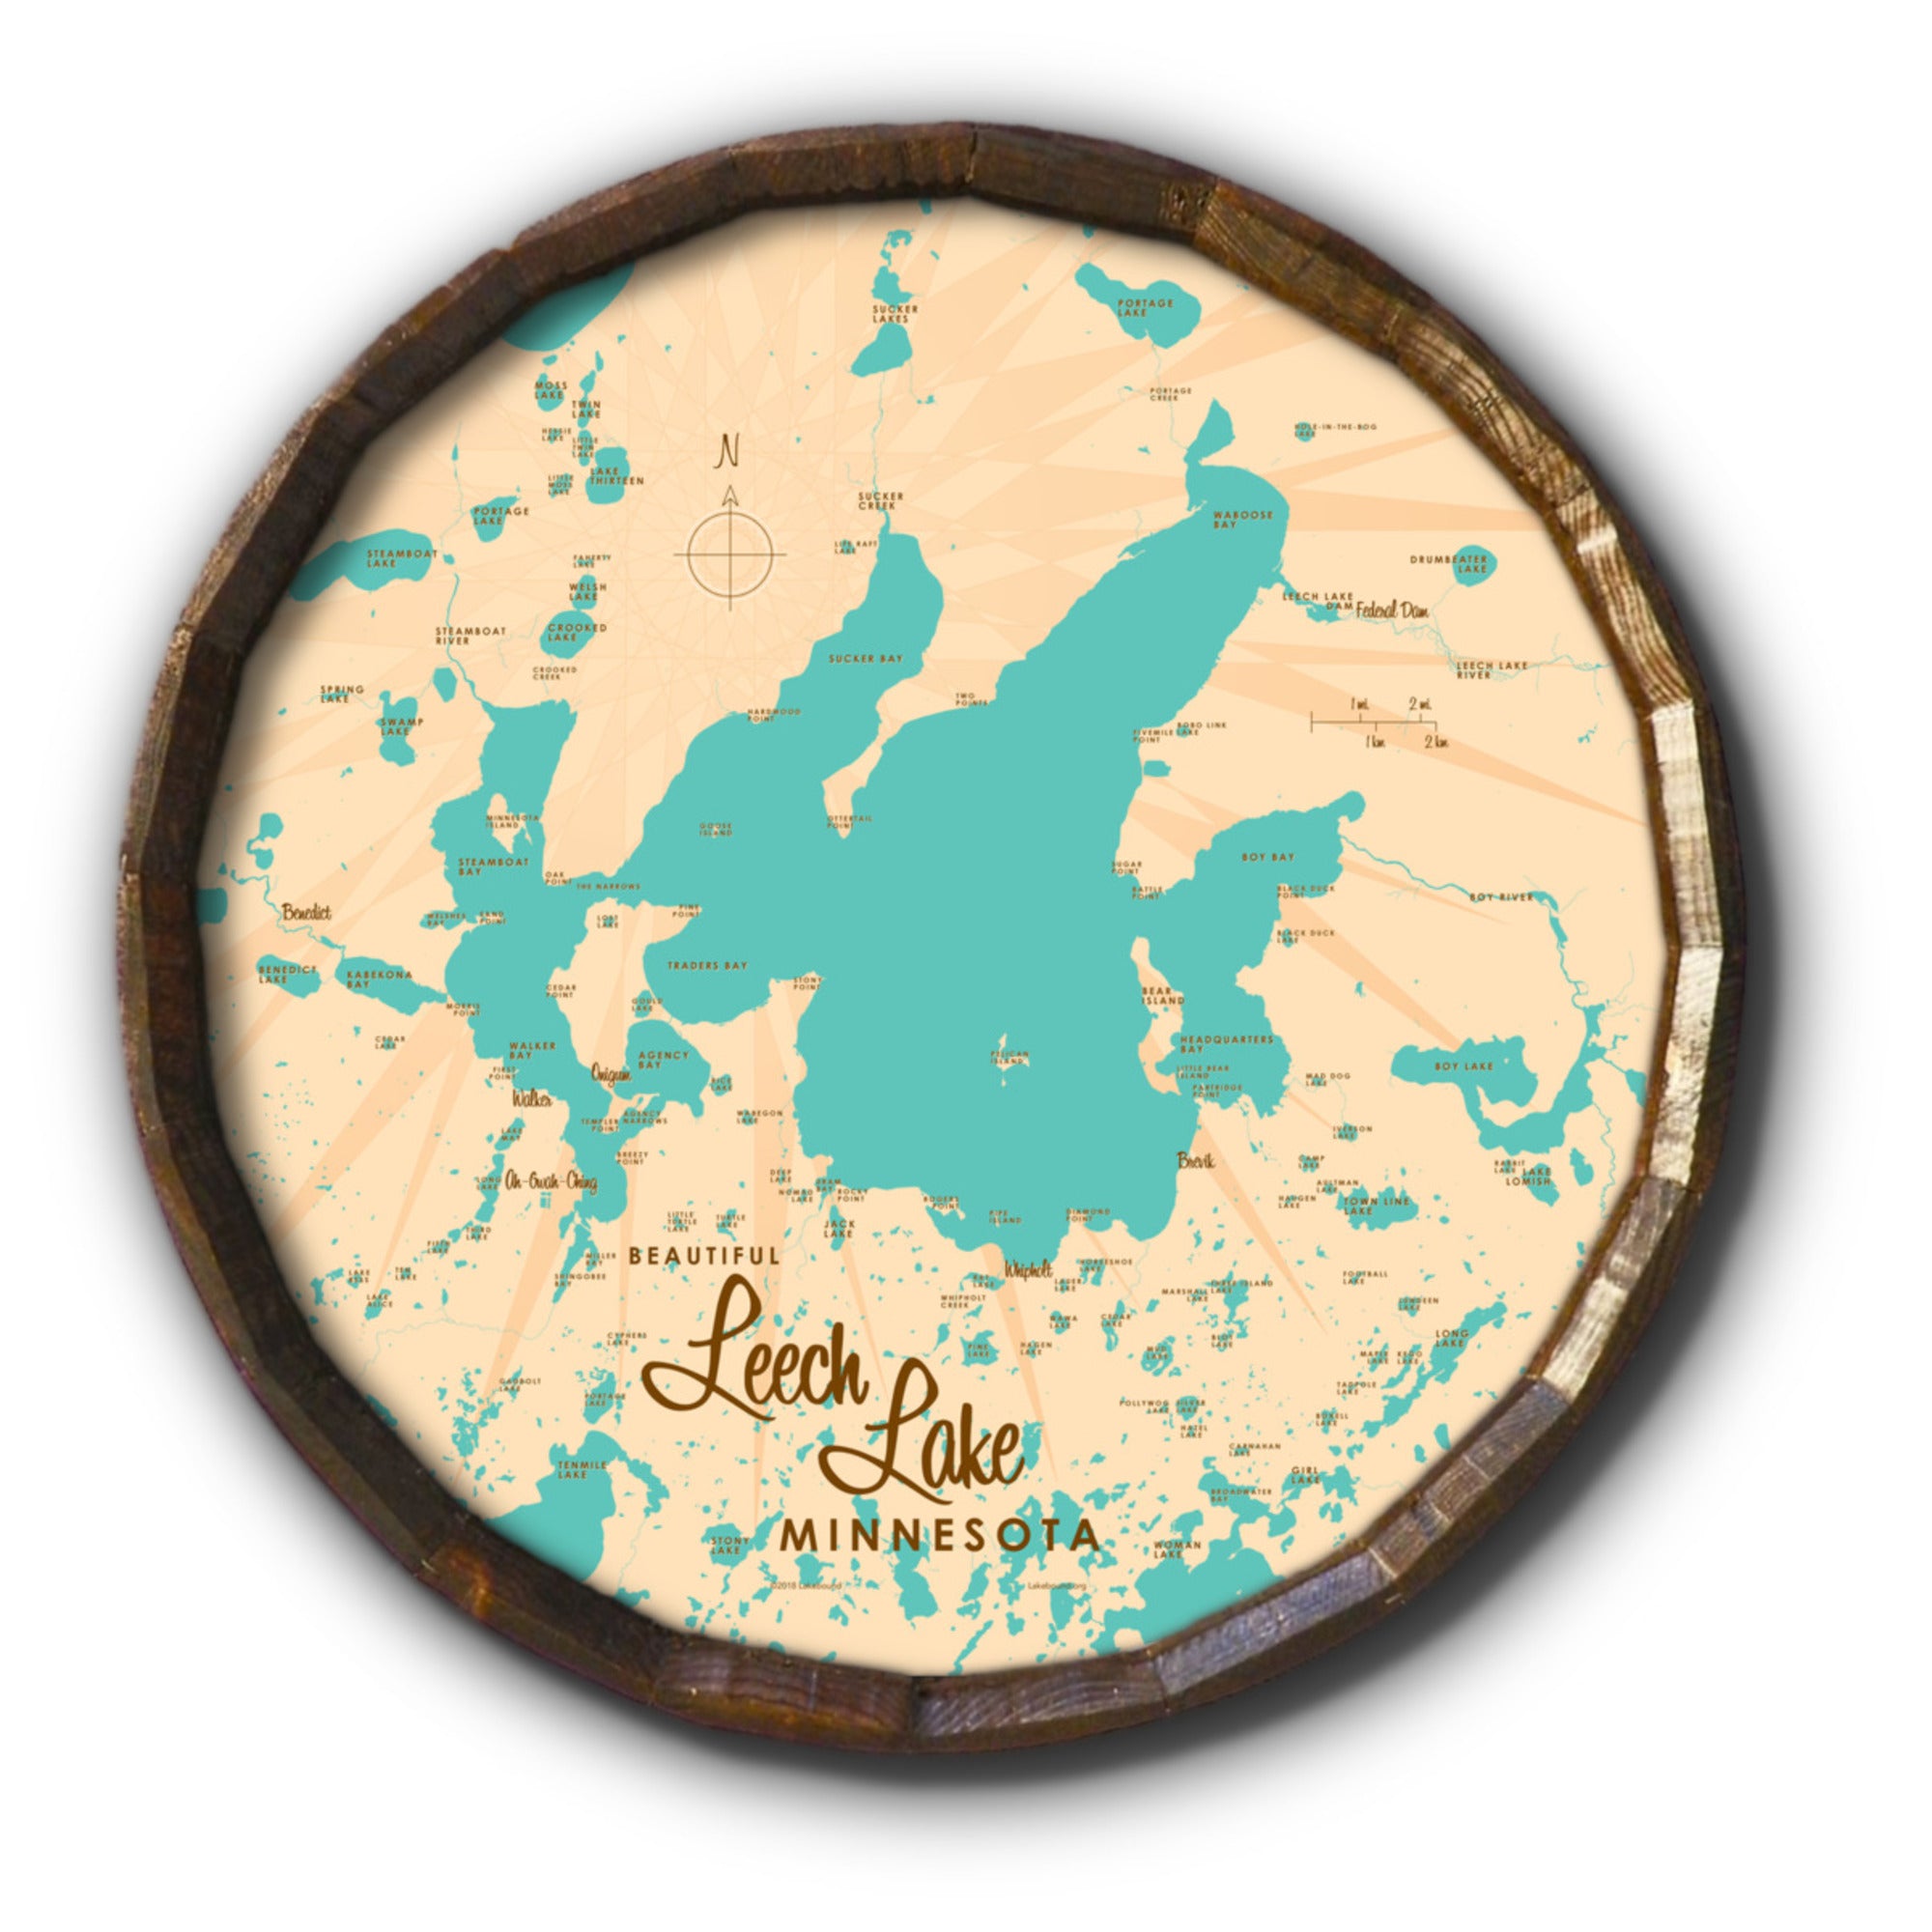 Leech Lake Minnesota, Barrel End Map Art